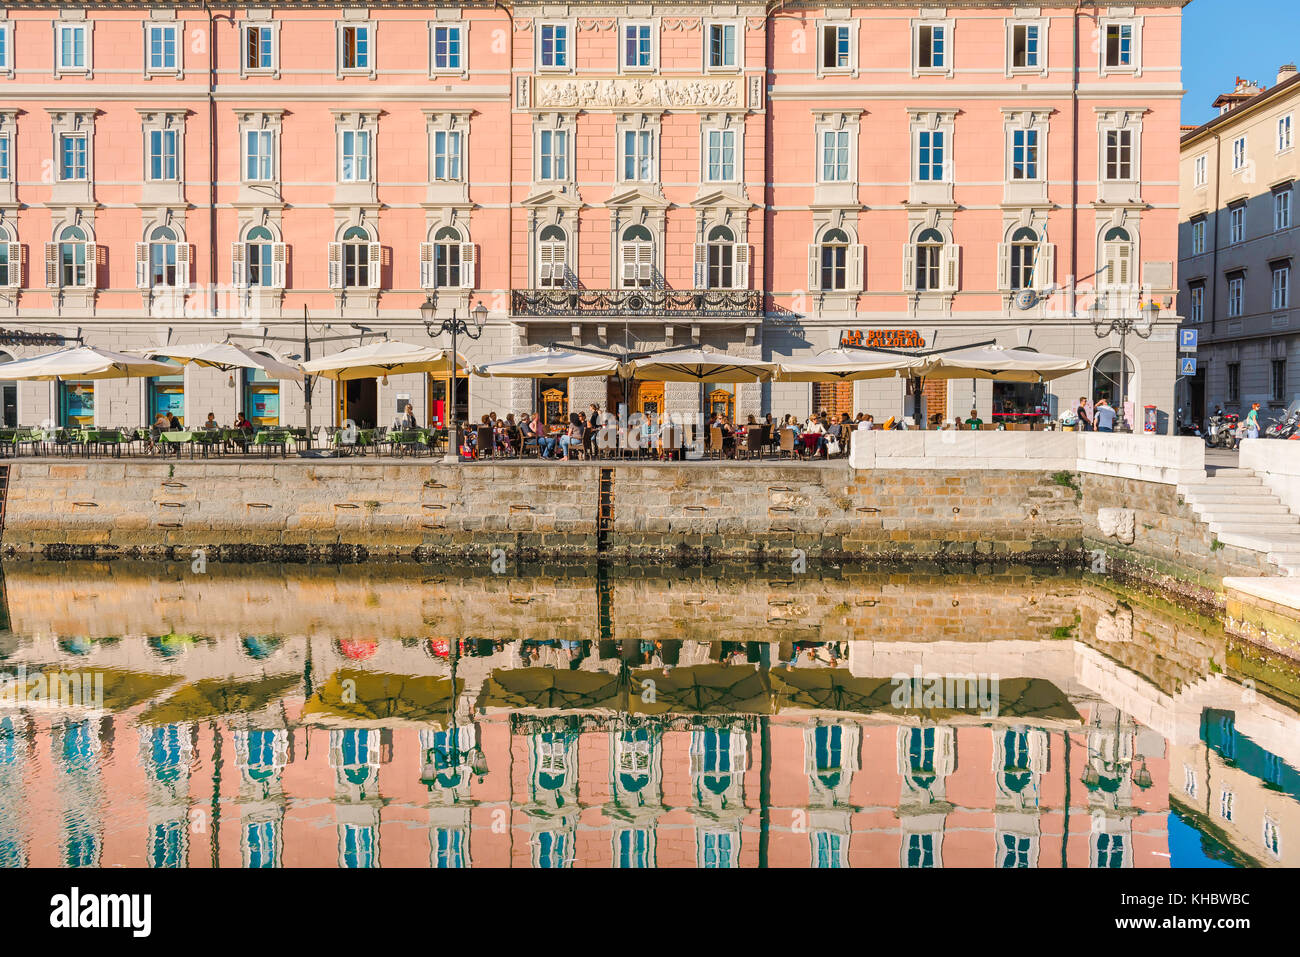 Trieste canal Grande, bâtiments du 19ème siècle de couleur à côté du Grand Canal dans le quartier de Borgo Teresiano Trieste, Italie. Banque D'Images